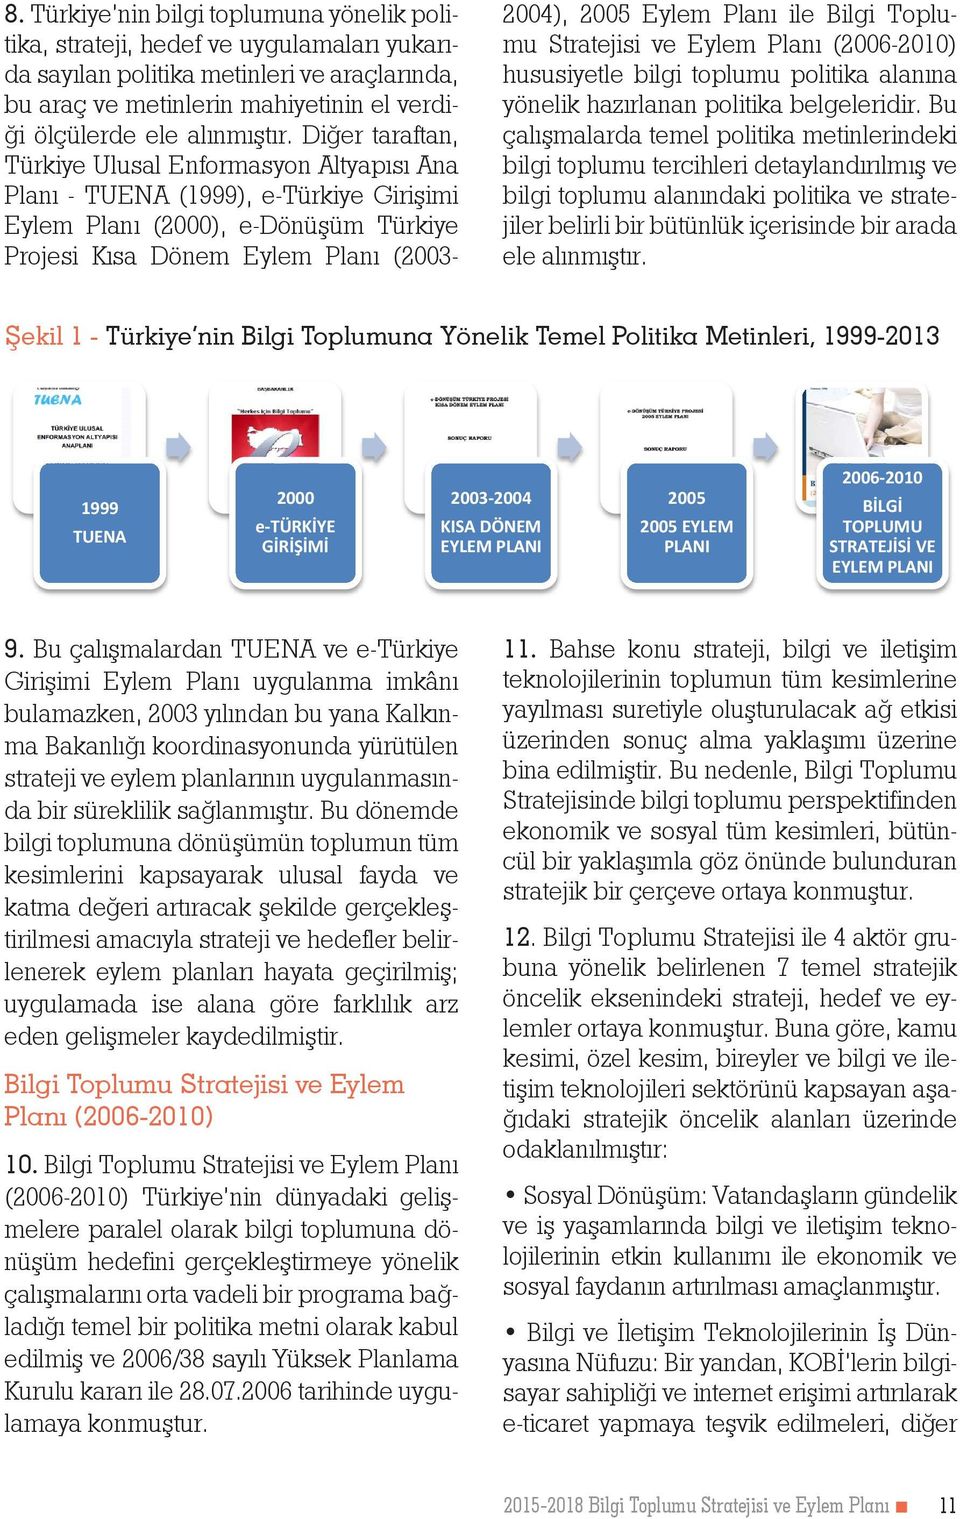 Diğer taraftan, Türkiye Ulusal Enformasyon Altyapısı Ana Planı - TUENA (1999), e-türkiye Girişimi Eylem Planı (2000), e-dönüşüm Türkiye Projesi Kısa Dönem Eylem Planı (2003-2004), 2005 Eylem Planı